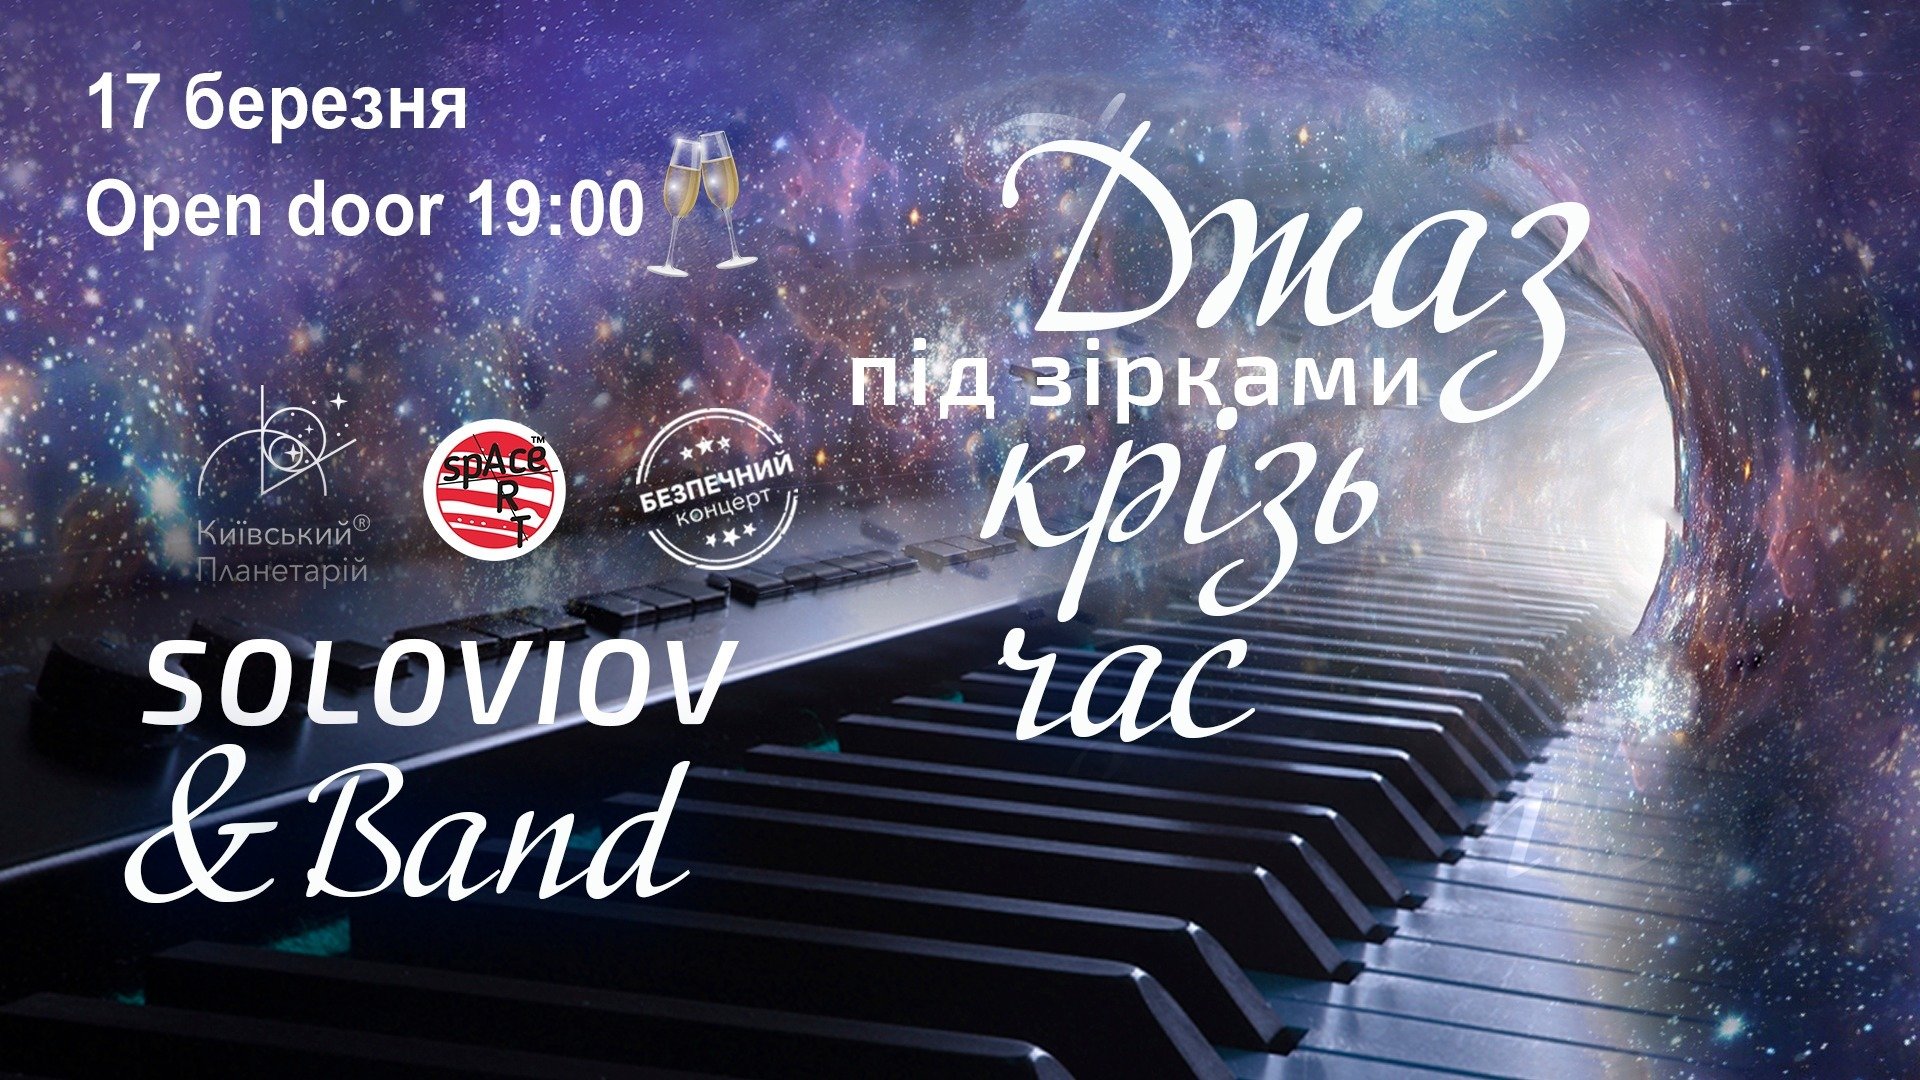 Джаз под звездами "Сквозь время": SOLOVIOV & Band